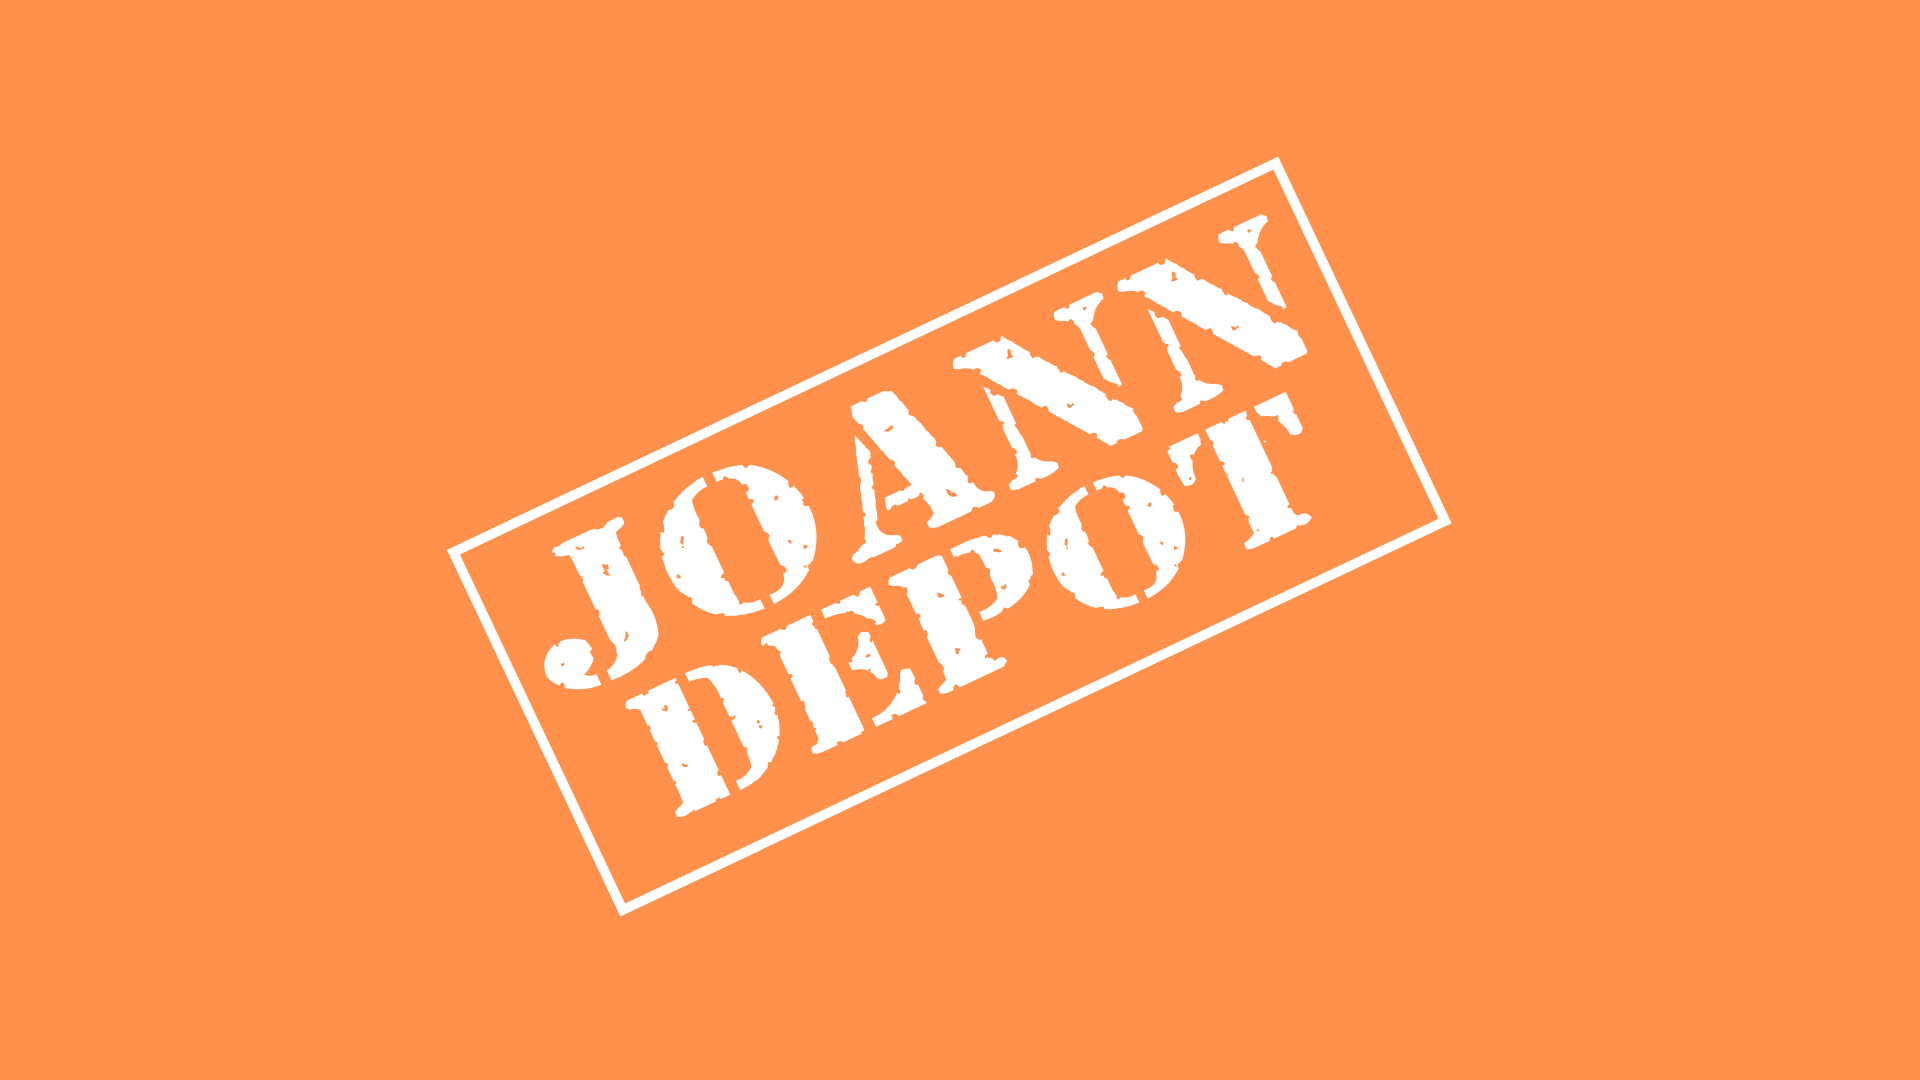 Joann Depot